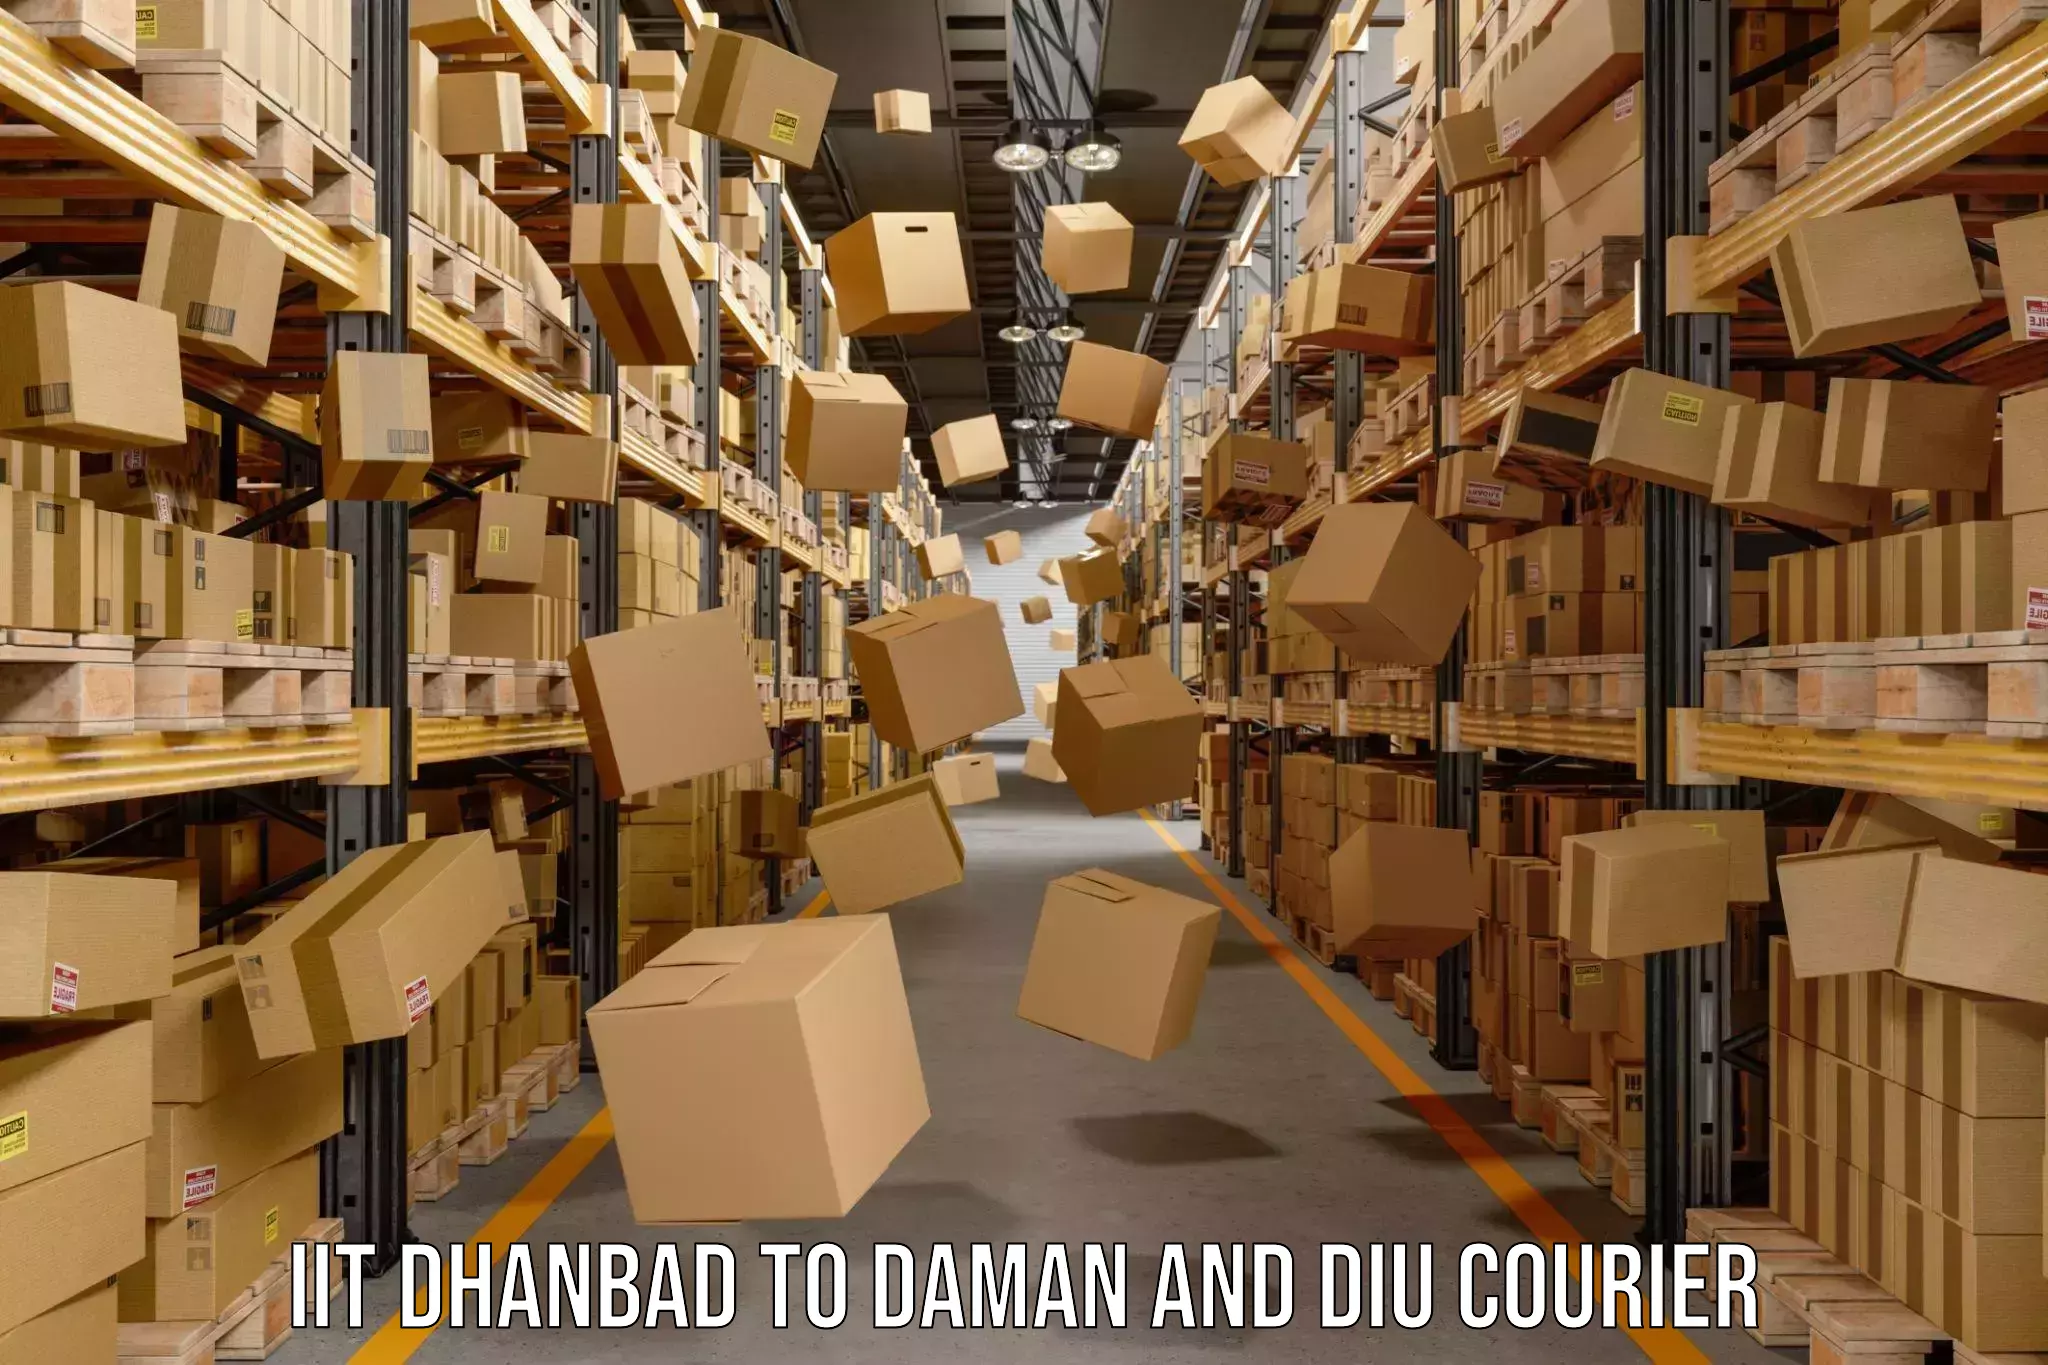 Custom courier packaging IIT Dhanbad to Diu